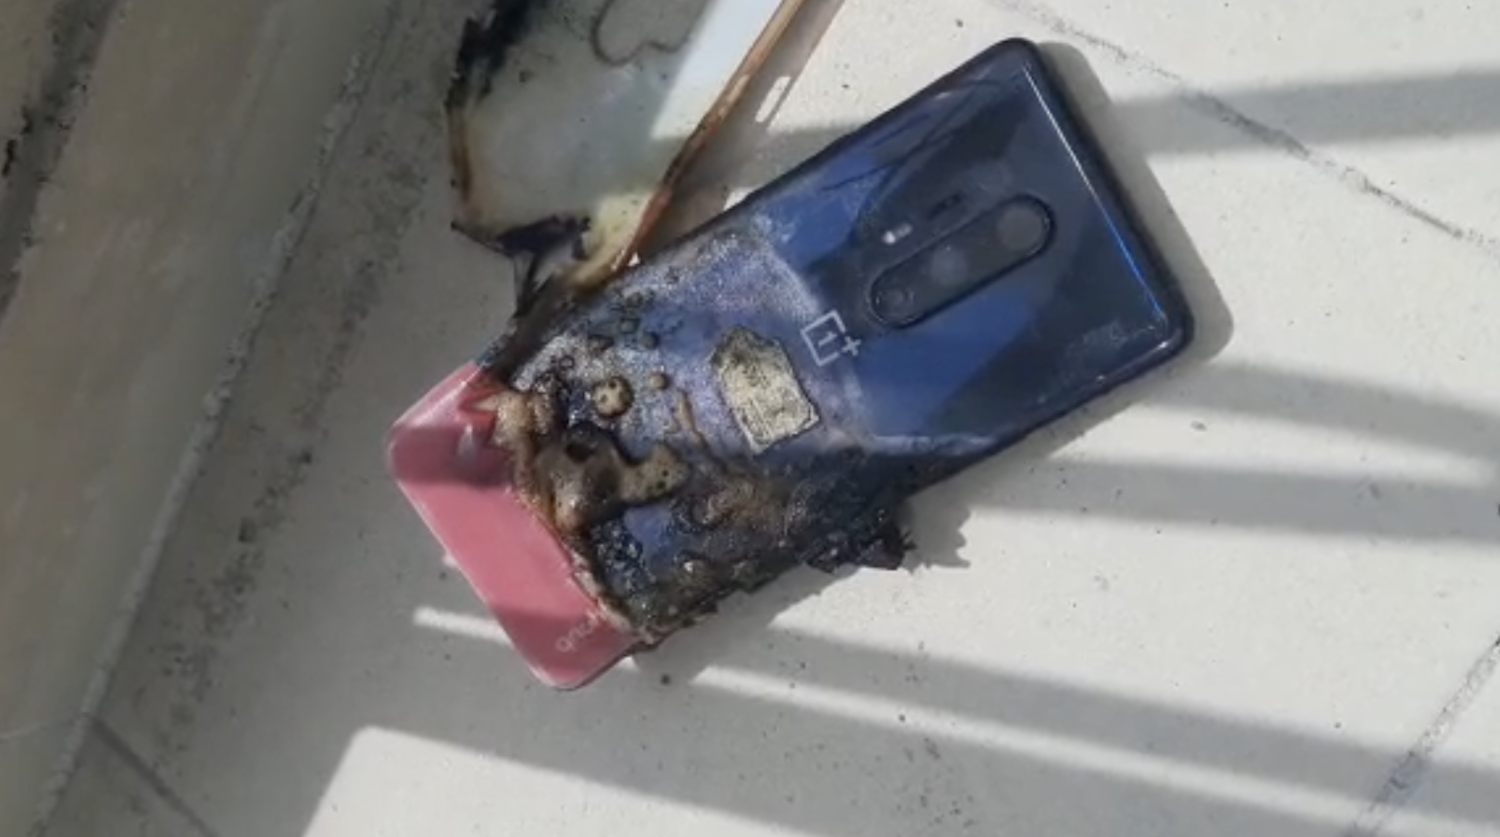 Nie tylko budżetowe smartfony płoną: użytkownik eksplodował swój flagowy OnePlus 8 Pro z 2020 roku